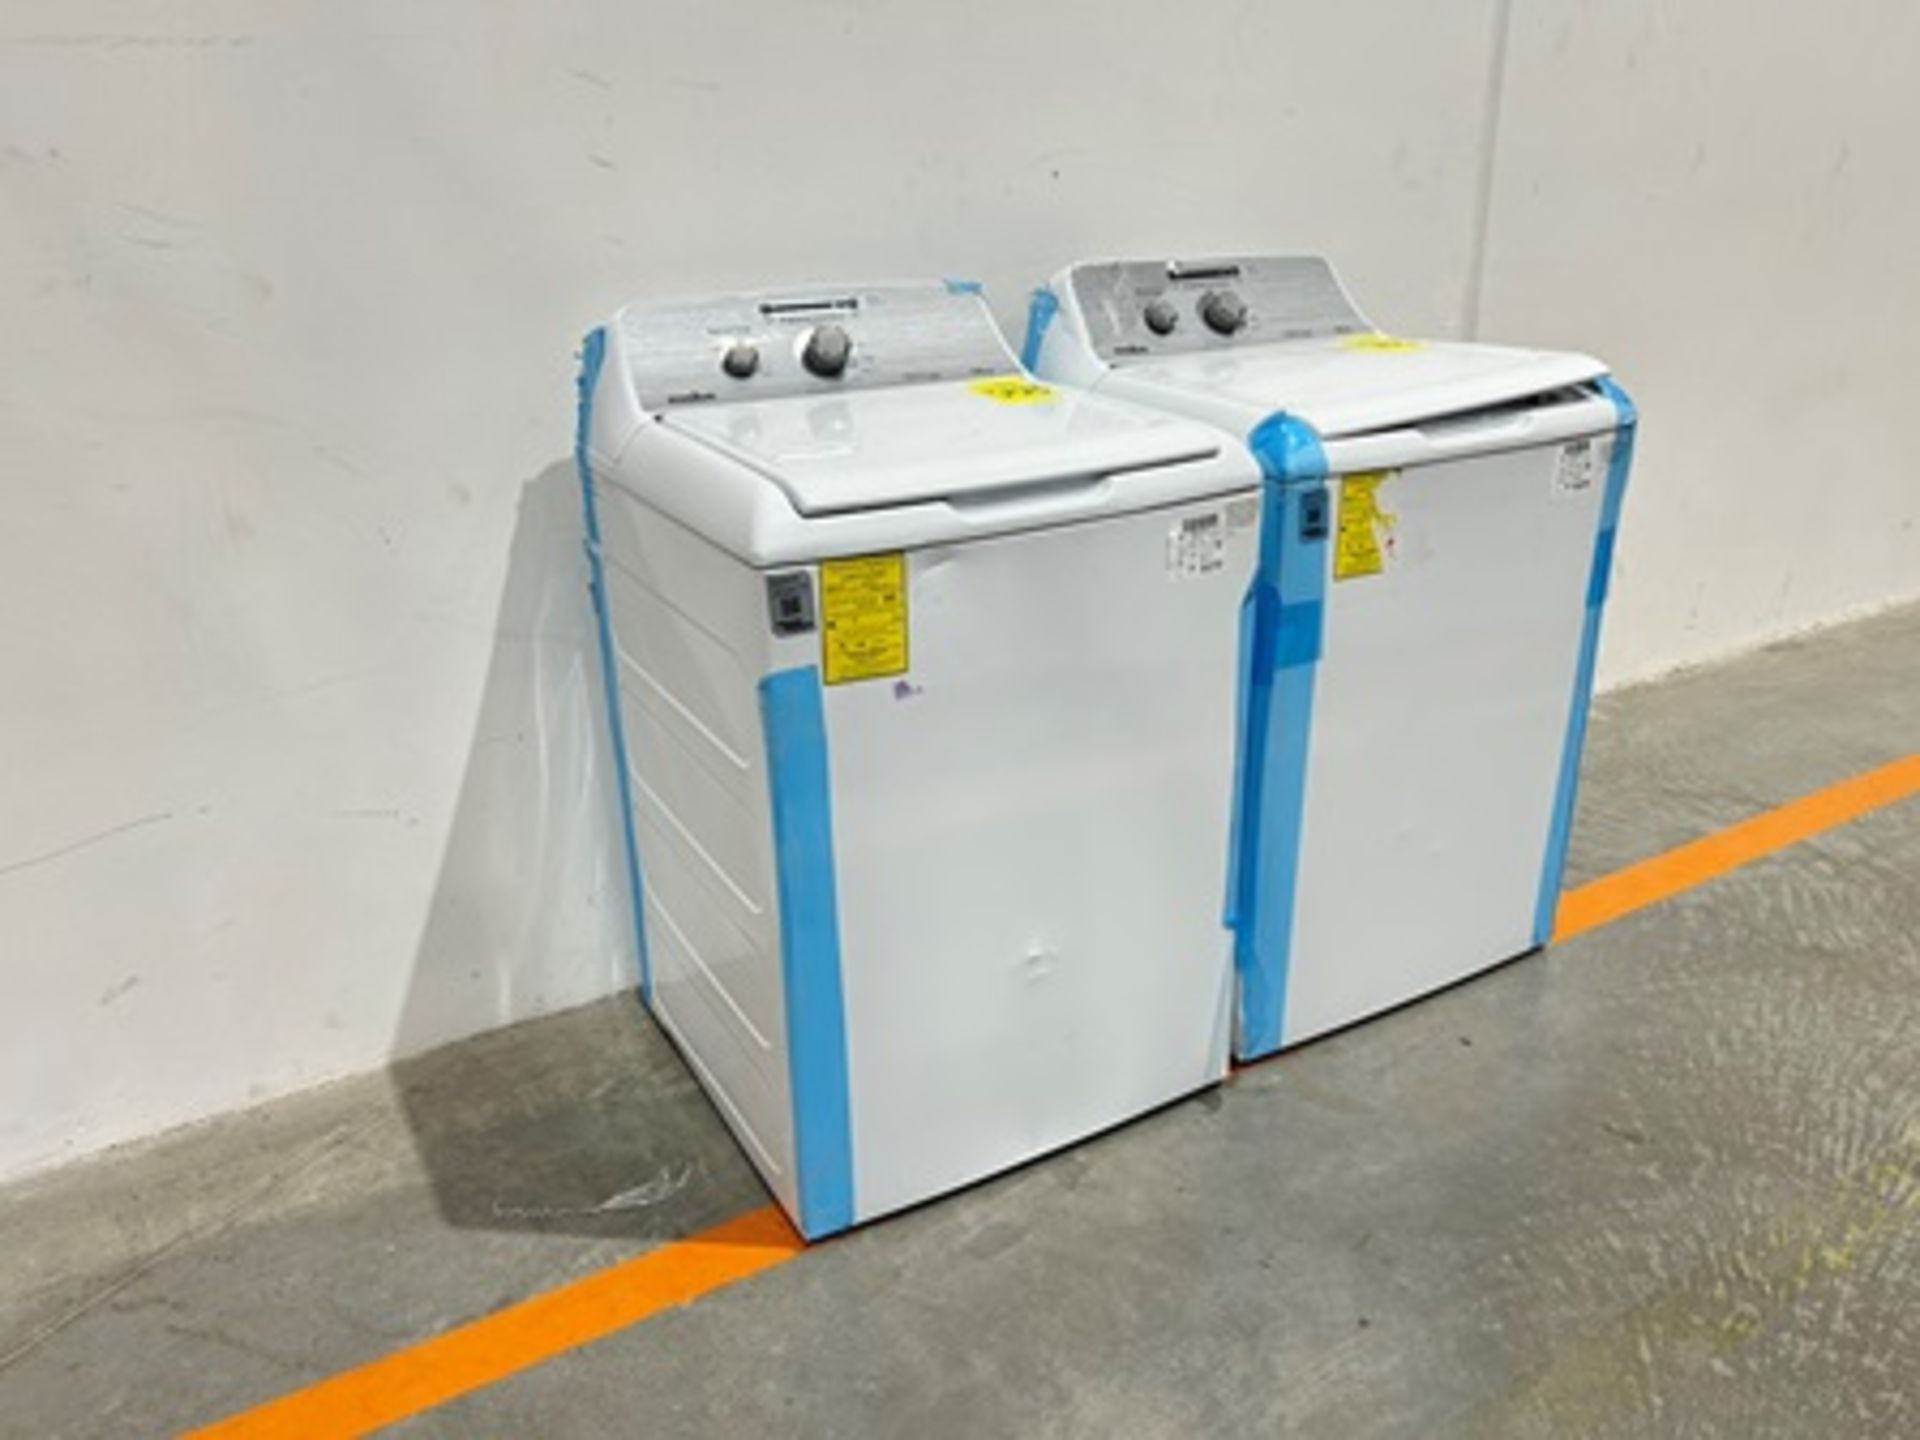 Lote de 2 lavadoras contiene: 1 Lavadora de 16 KG Marca MABE, Modelo LMA76112CBAB02, Serie S91208, - Image 2 of 11